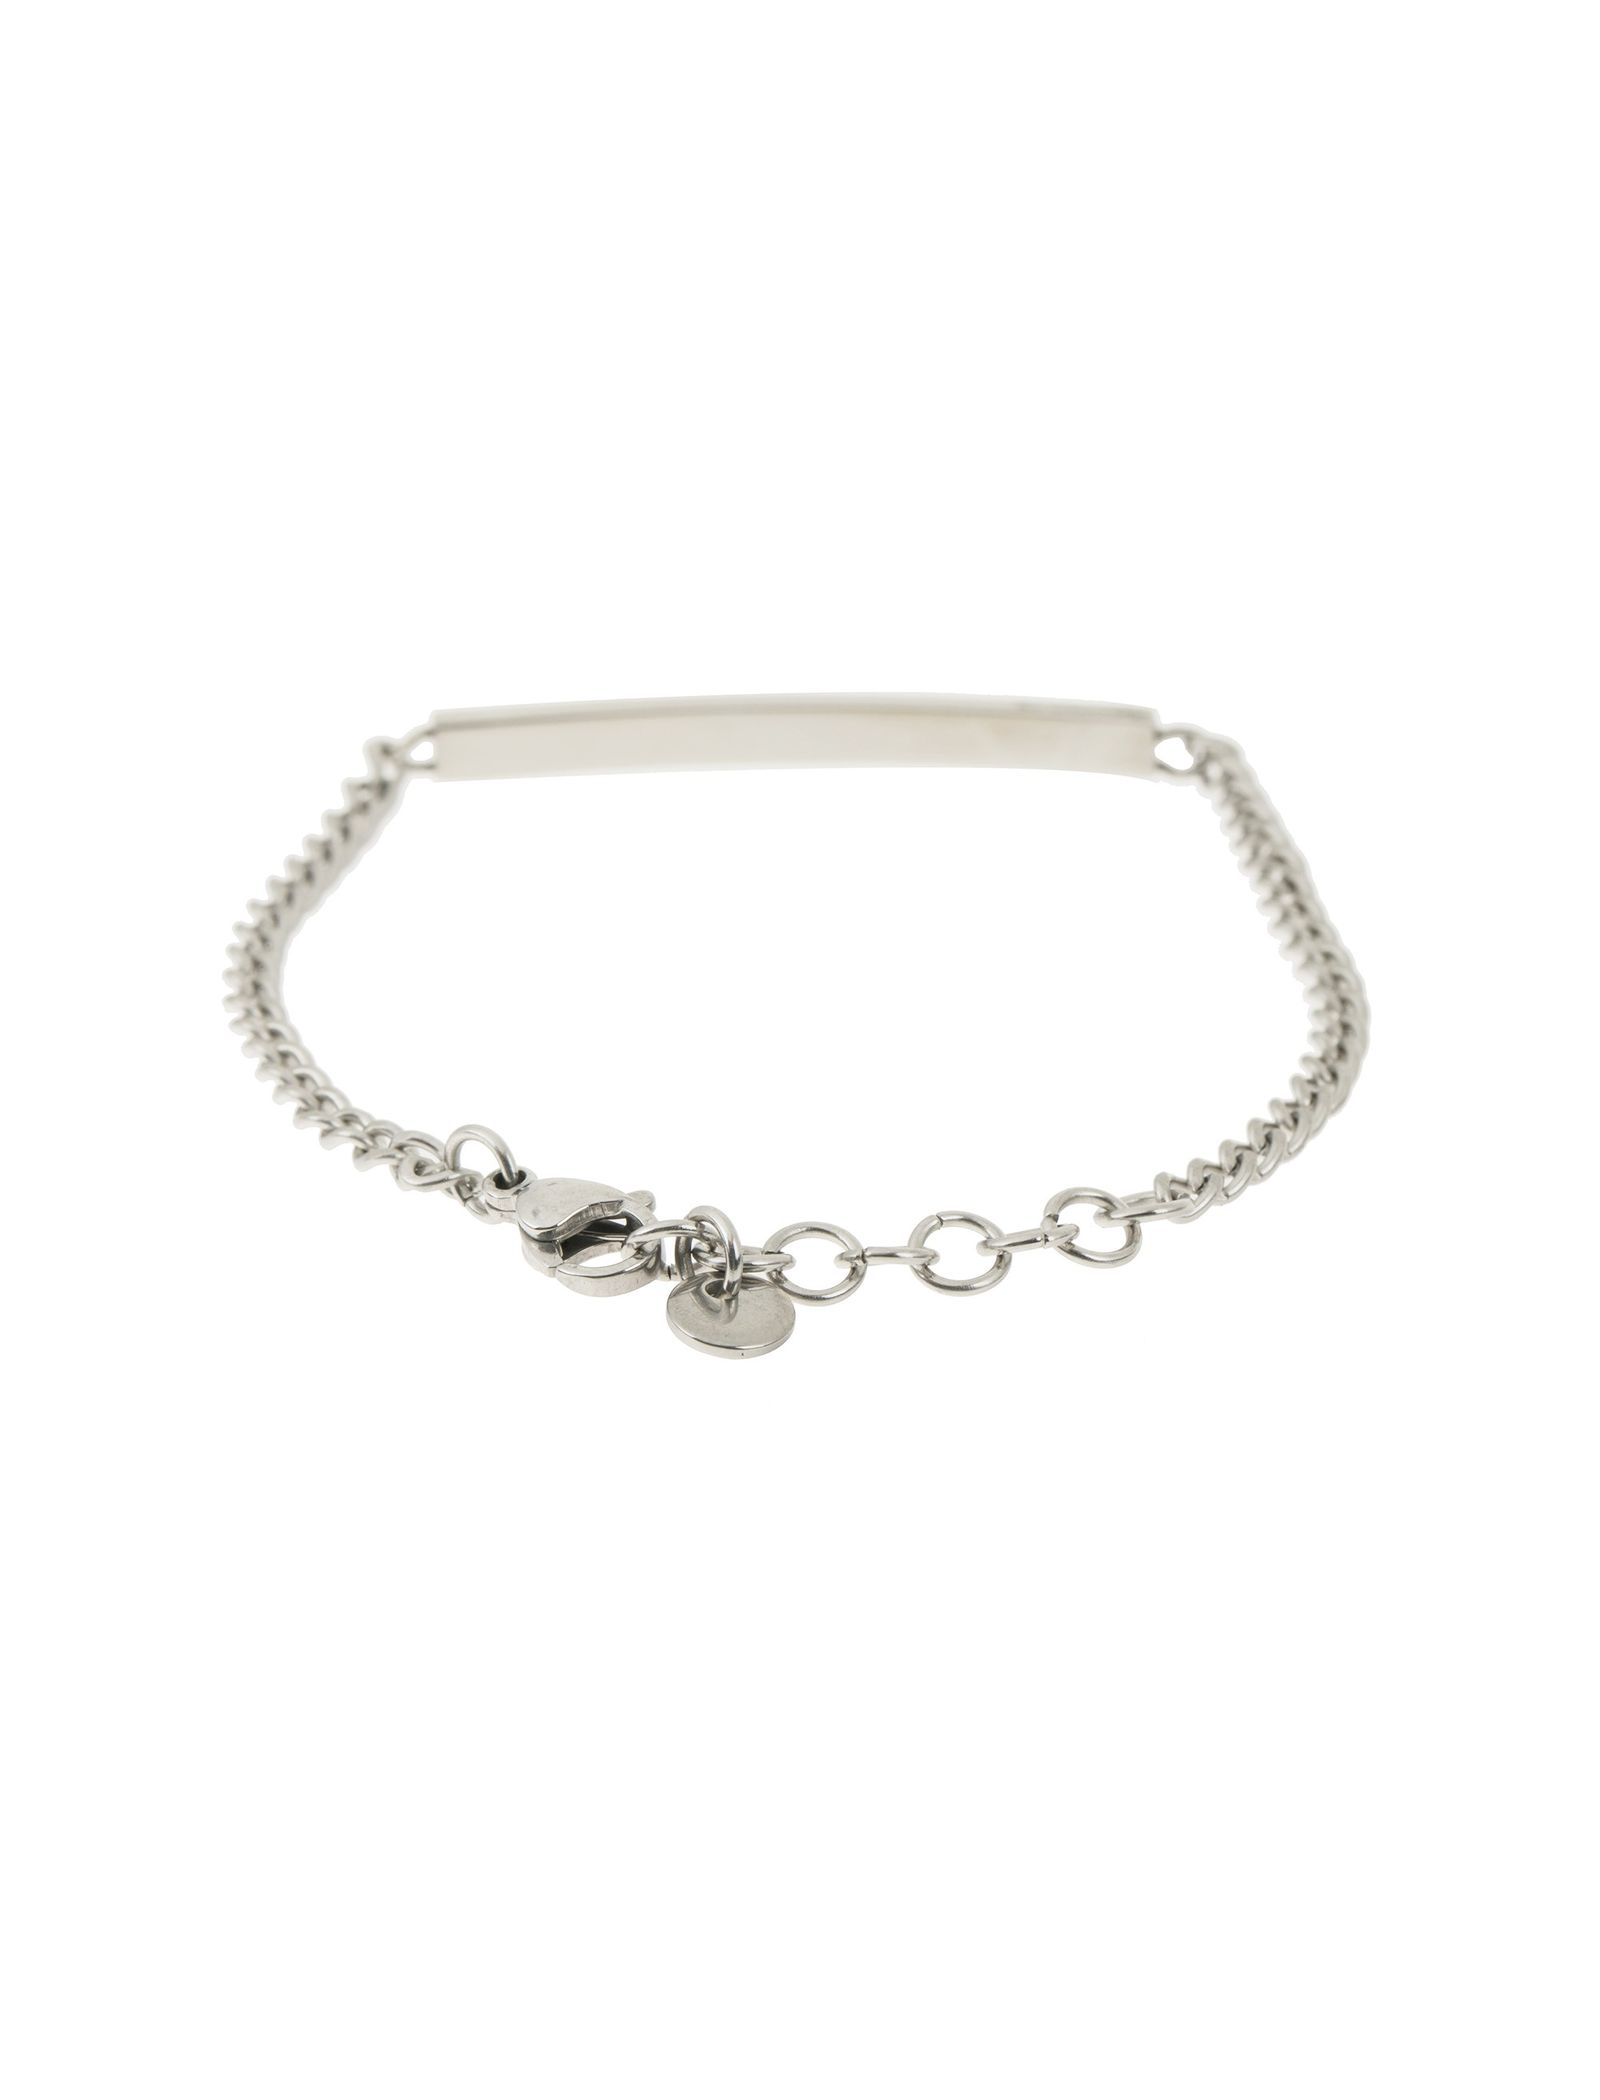 دستبند استیل زنجیری زنانه - برازوی - نقره اي  - 5